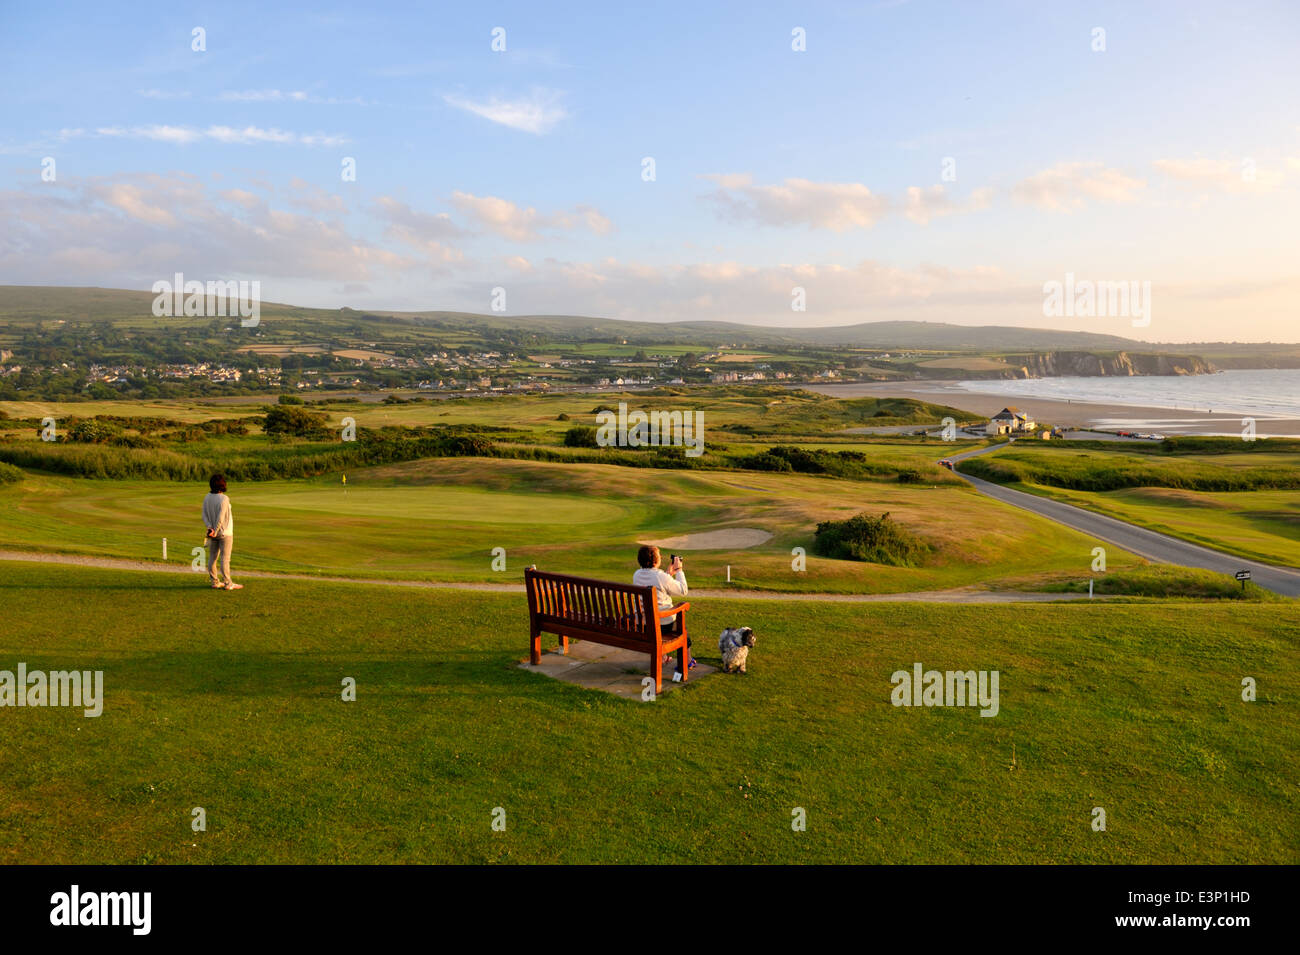 Newport Links Golf Club, femme sur banc avec vue sur plage de Newport, Pembrokeshire, Pays de Galles, Royaume-Uni Banque D'Images